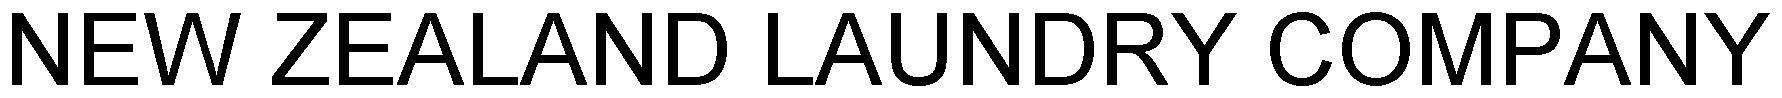 Trademark Logo NEW ZEALAND LAUNDRY COMPANY